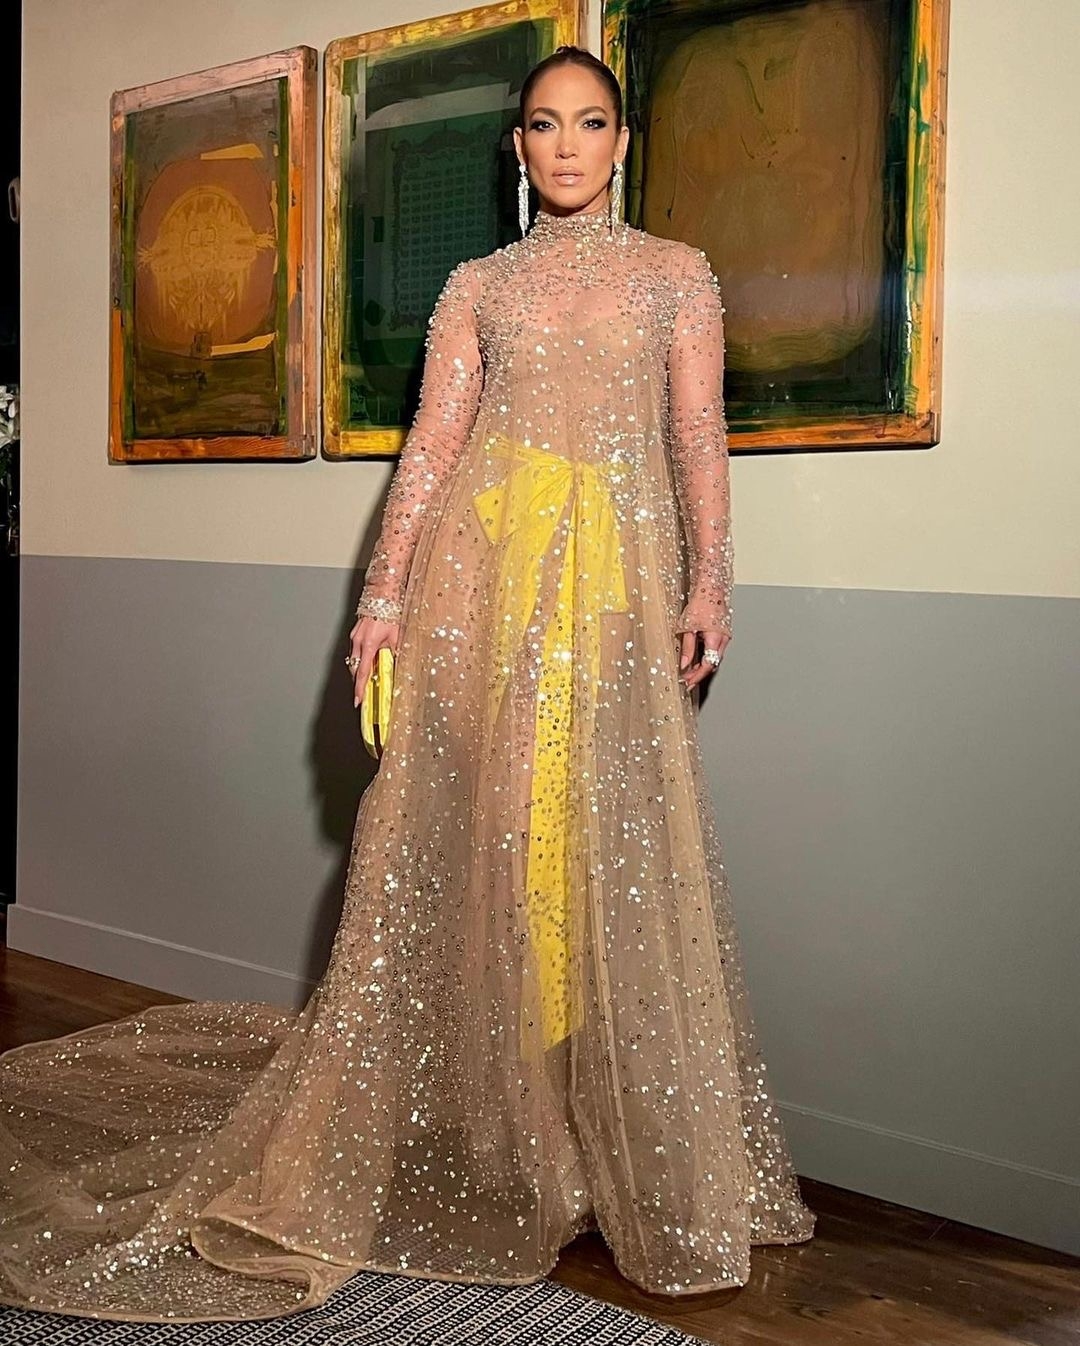 Дженнифер Лопес в роскошном наряде с вырезом от Balmain на Met Gala 2018